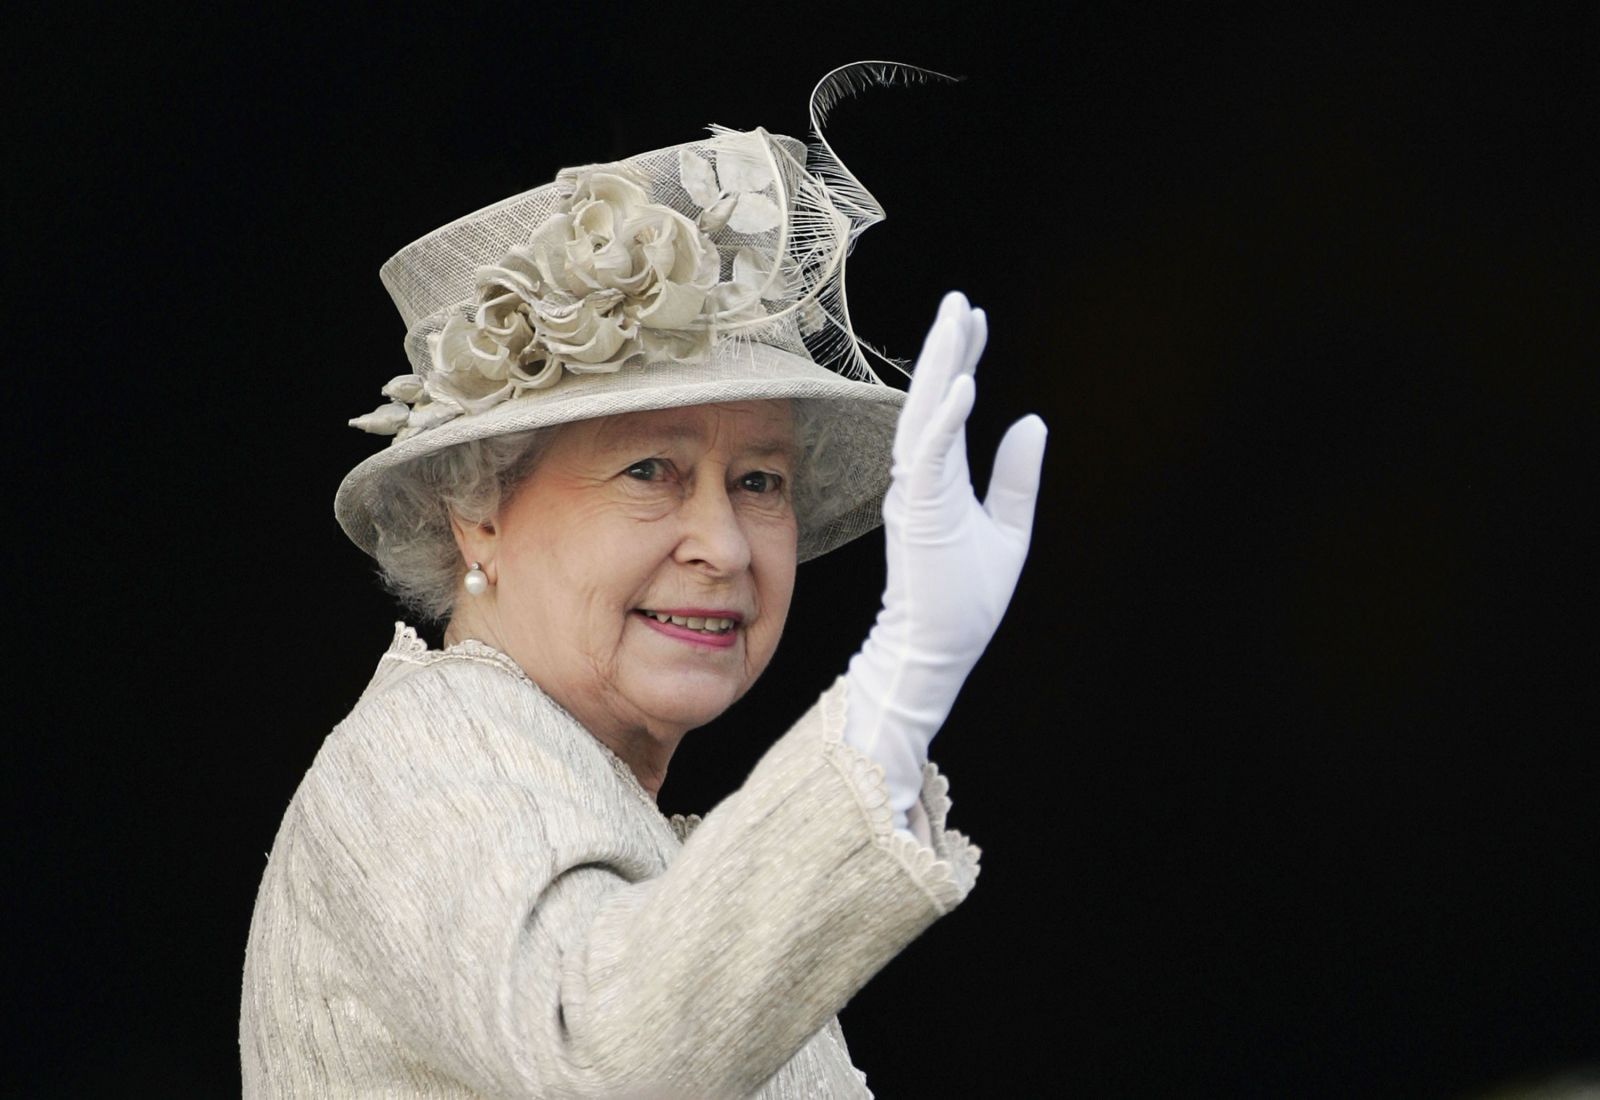 Người dân Anh luôn dành cho Nữ hoàng Elizabeth II sự ngưỡng mộ và kính trọng, sau tất cả những di sản đồ sộ mà bà đã đóng góp cho hình ảnh và sự thịnh vượng của Vương quốc Anh.